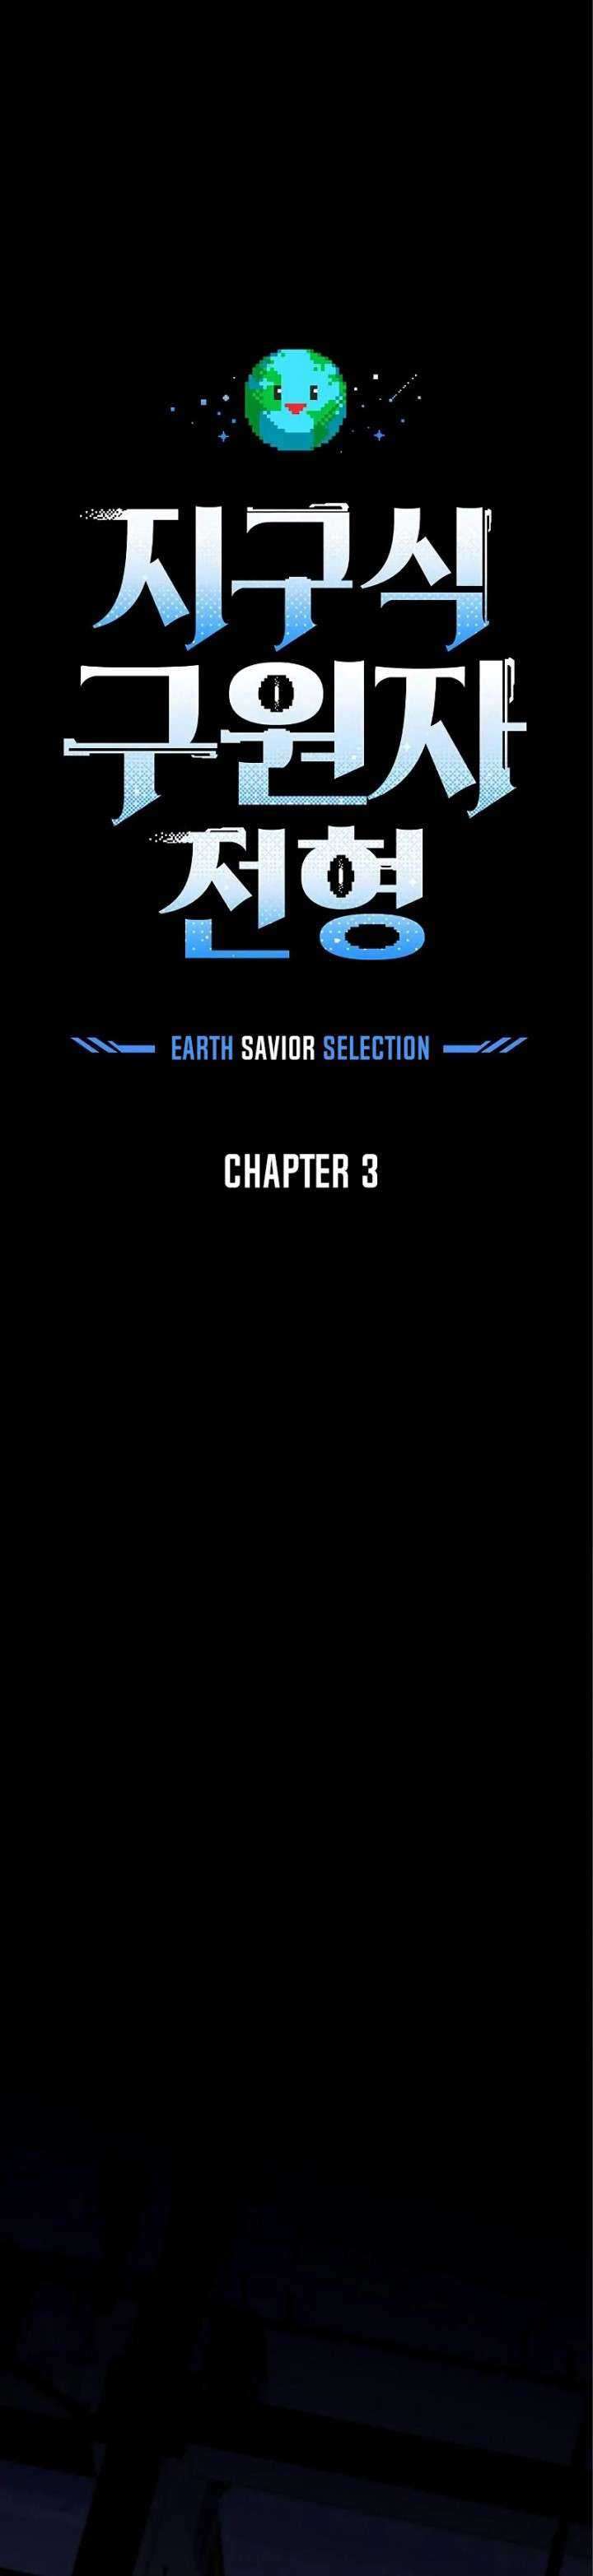 The Earth Savior Selection Chapter 3